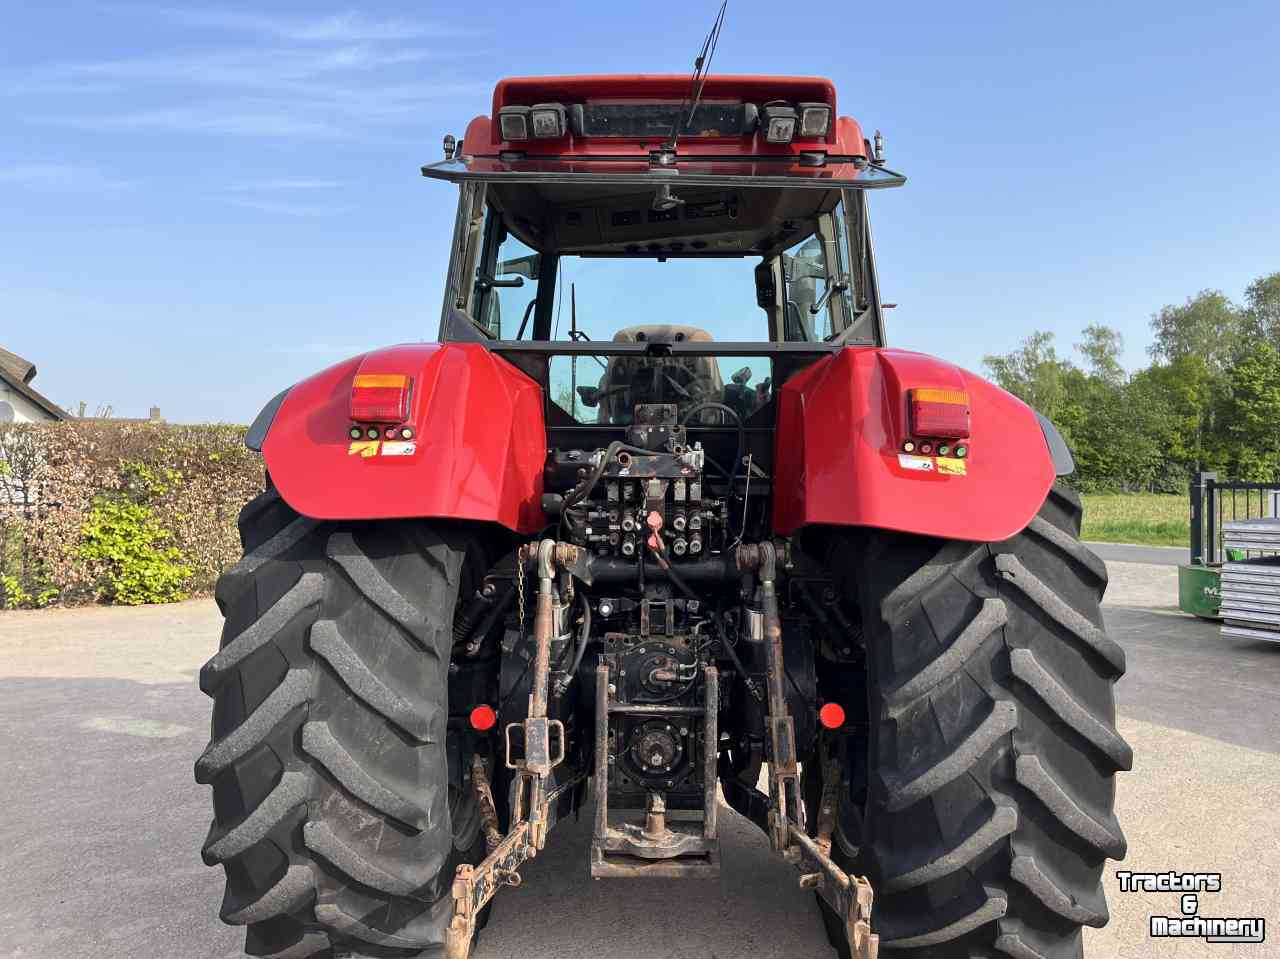 Schlepper / Traktoren Case cvx 170